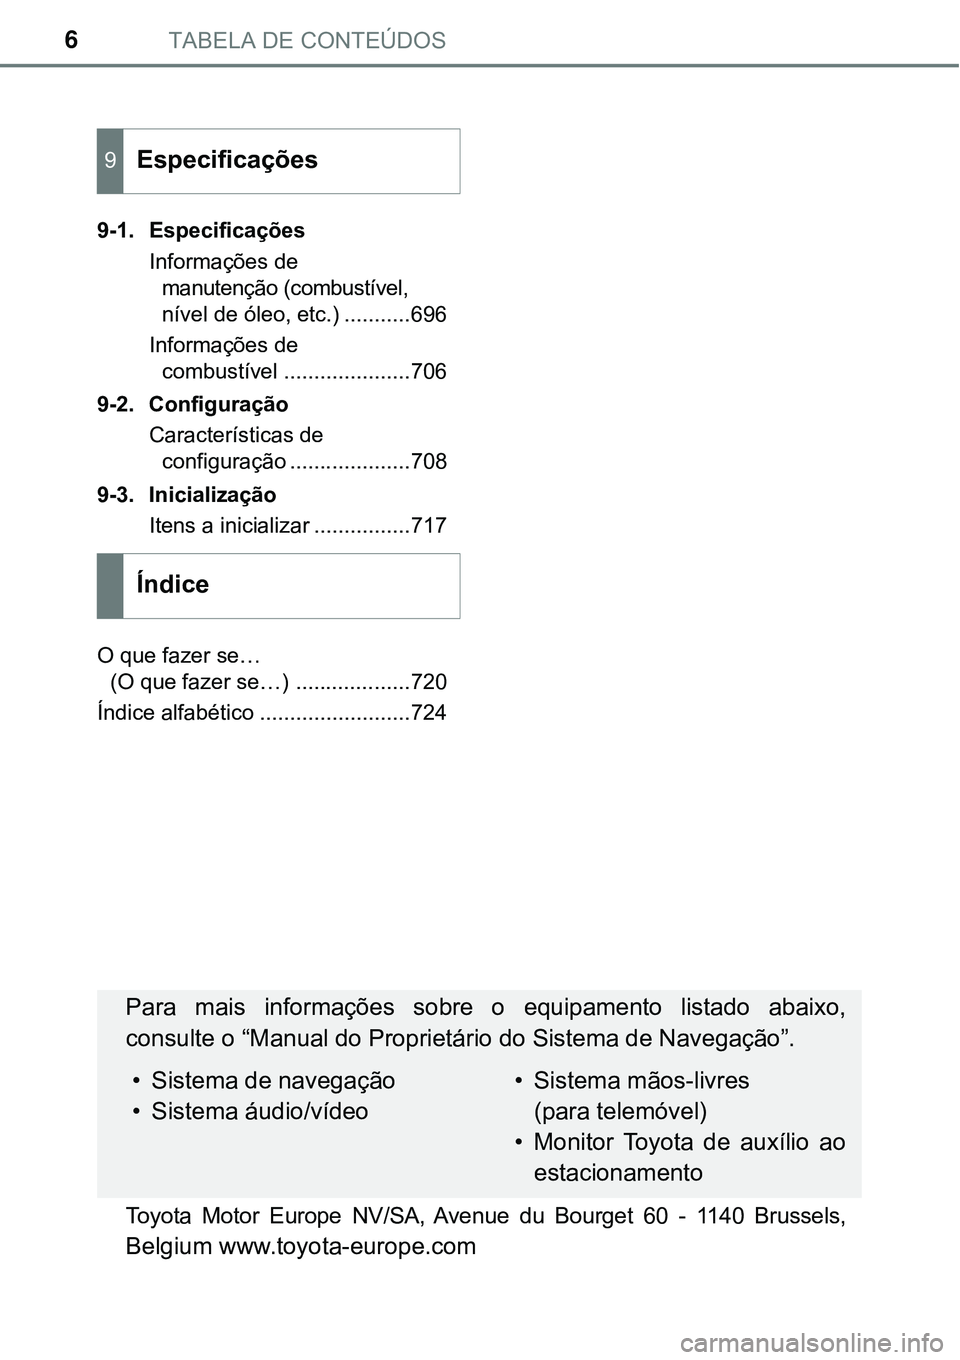 TOYOTA PRIUS PLUG-IN HYBRID 2016  Manual de utilização (in Portuguese) TABELA DE CONTEÚDOS6
9-1. Especificações
Informações de 
manutenção (combustível, 
nível de óleo, etc.) ...........696
Informações de 
combustível .....................706
9-2. Configura�